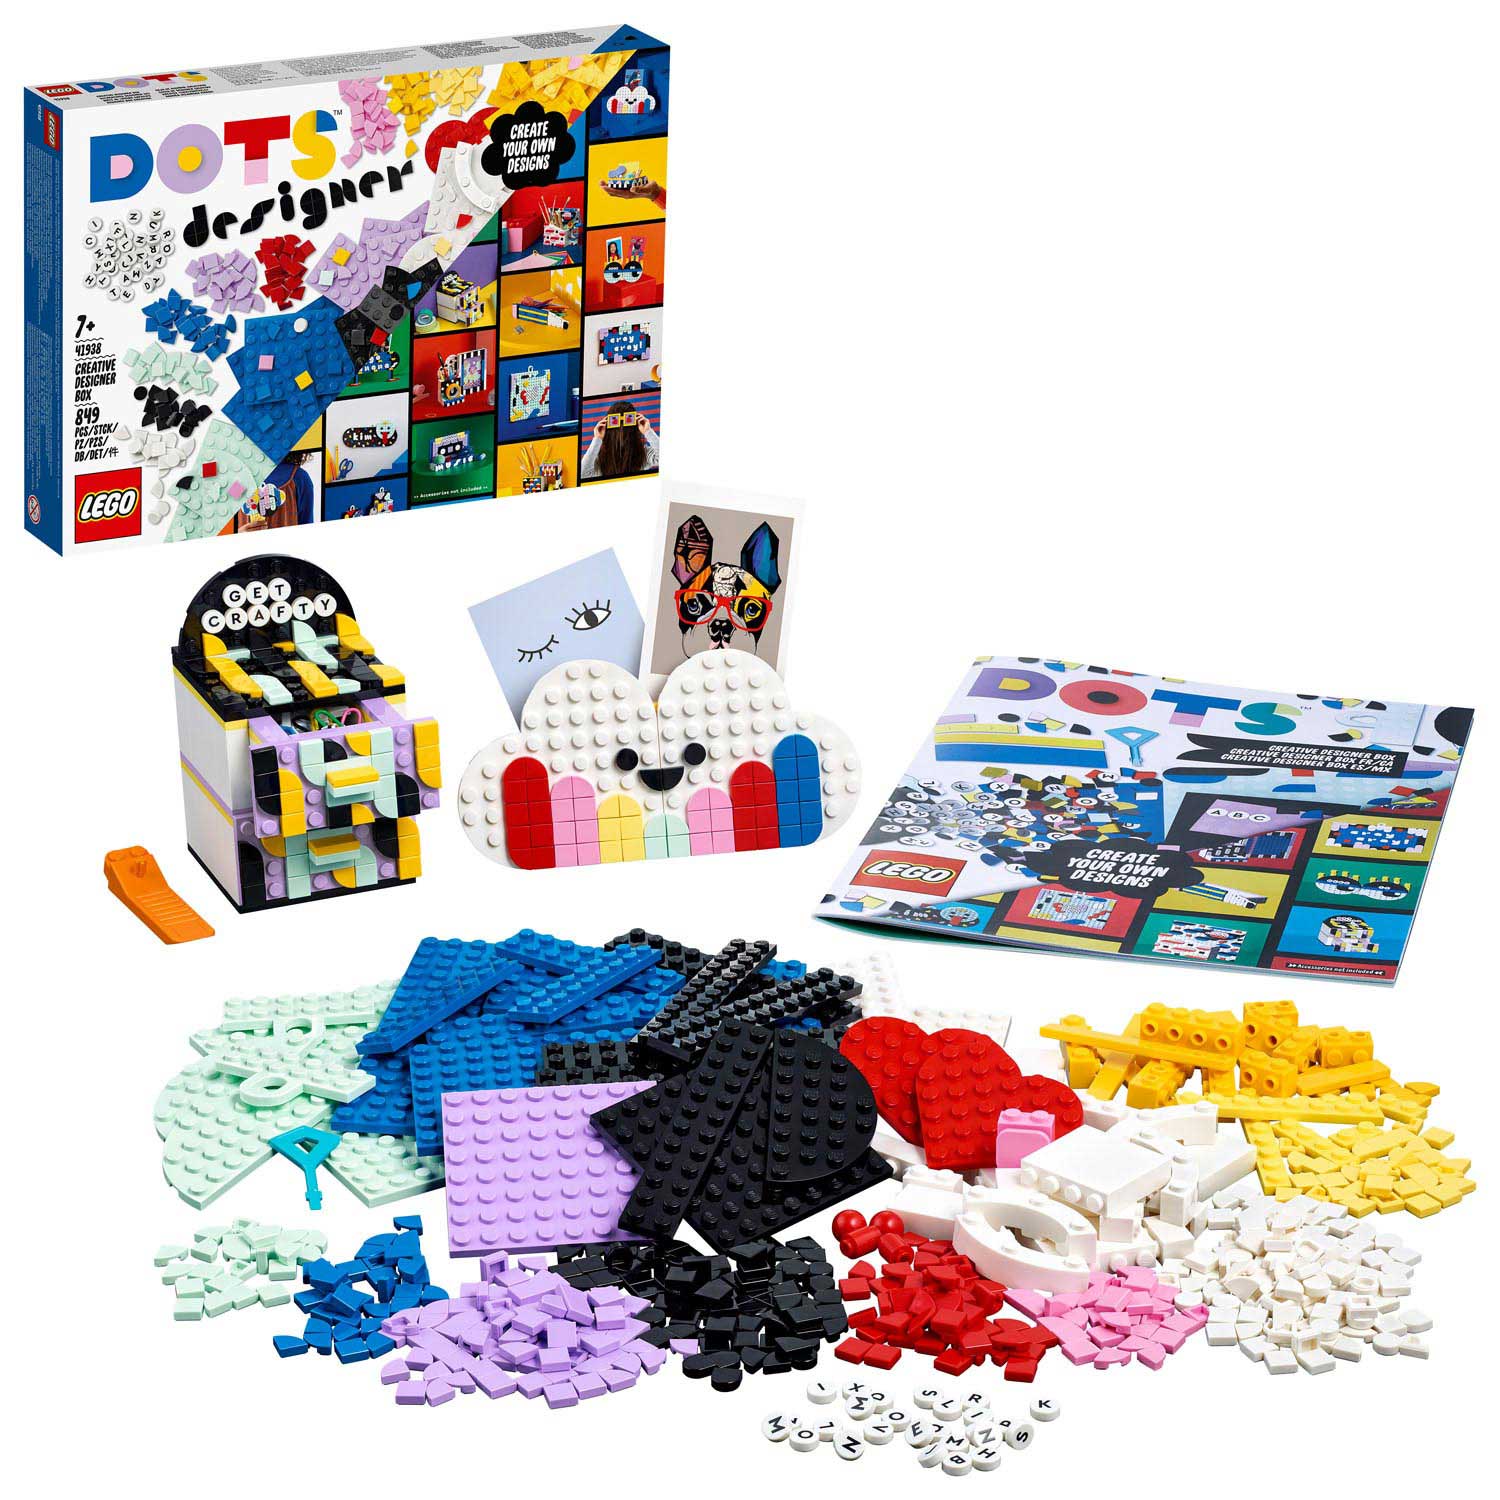 LEGO DOTS 41938 Creatieve Ontwerpdoos